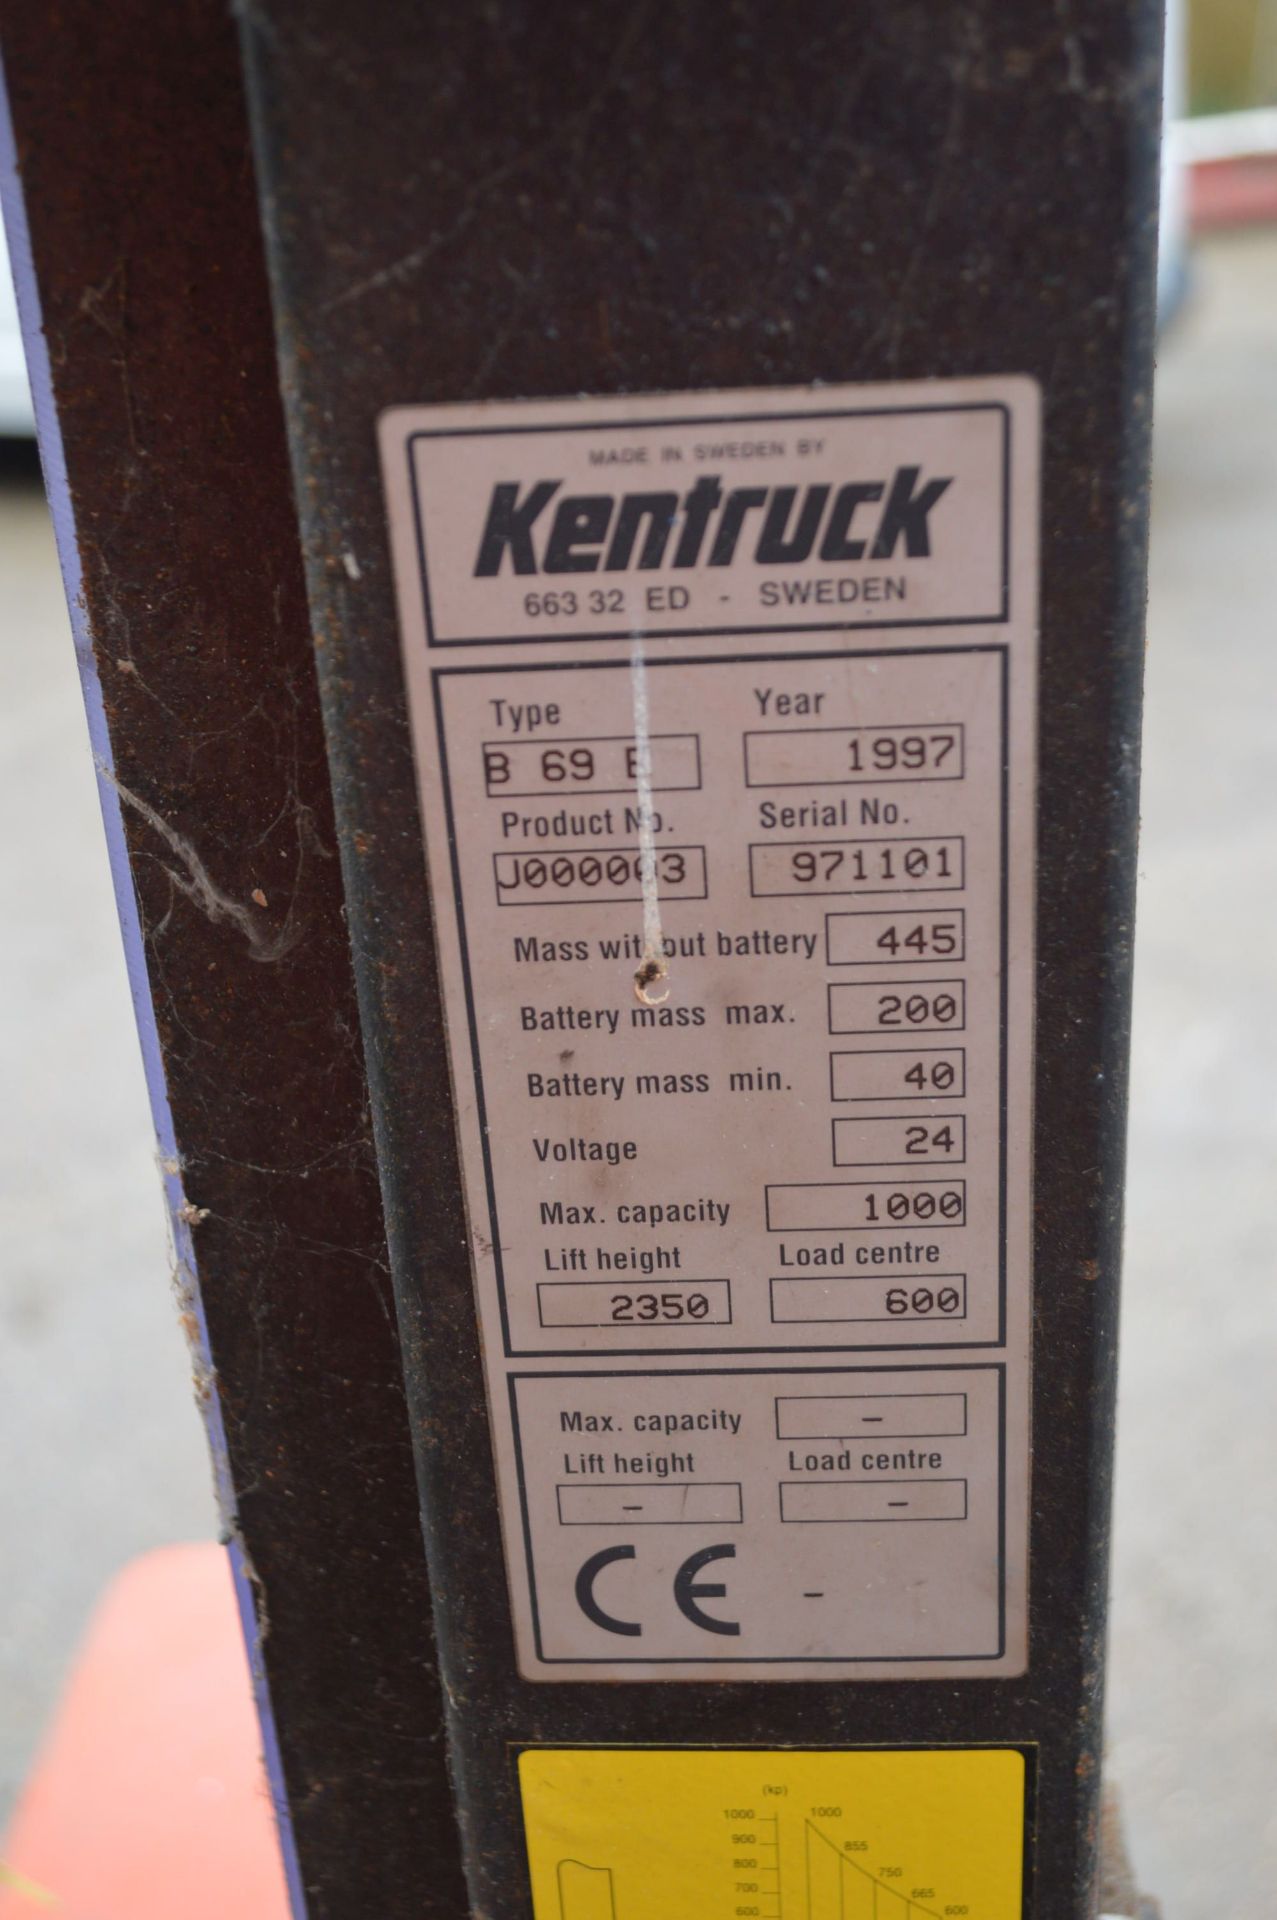 Kentruck B69E 1000kg cap. Pedestrian Operated Battery Electric Fork Lift Truck, serial no. 971101, - Bild 3 aus 5